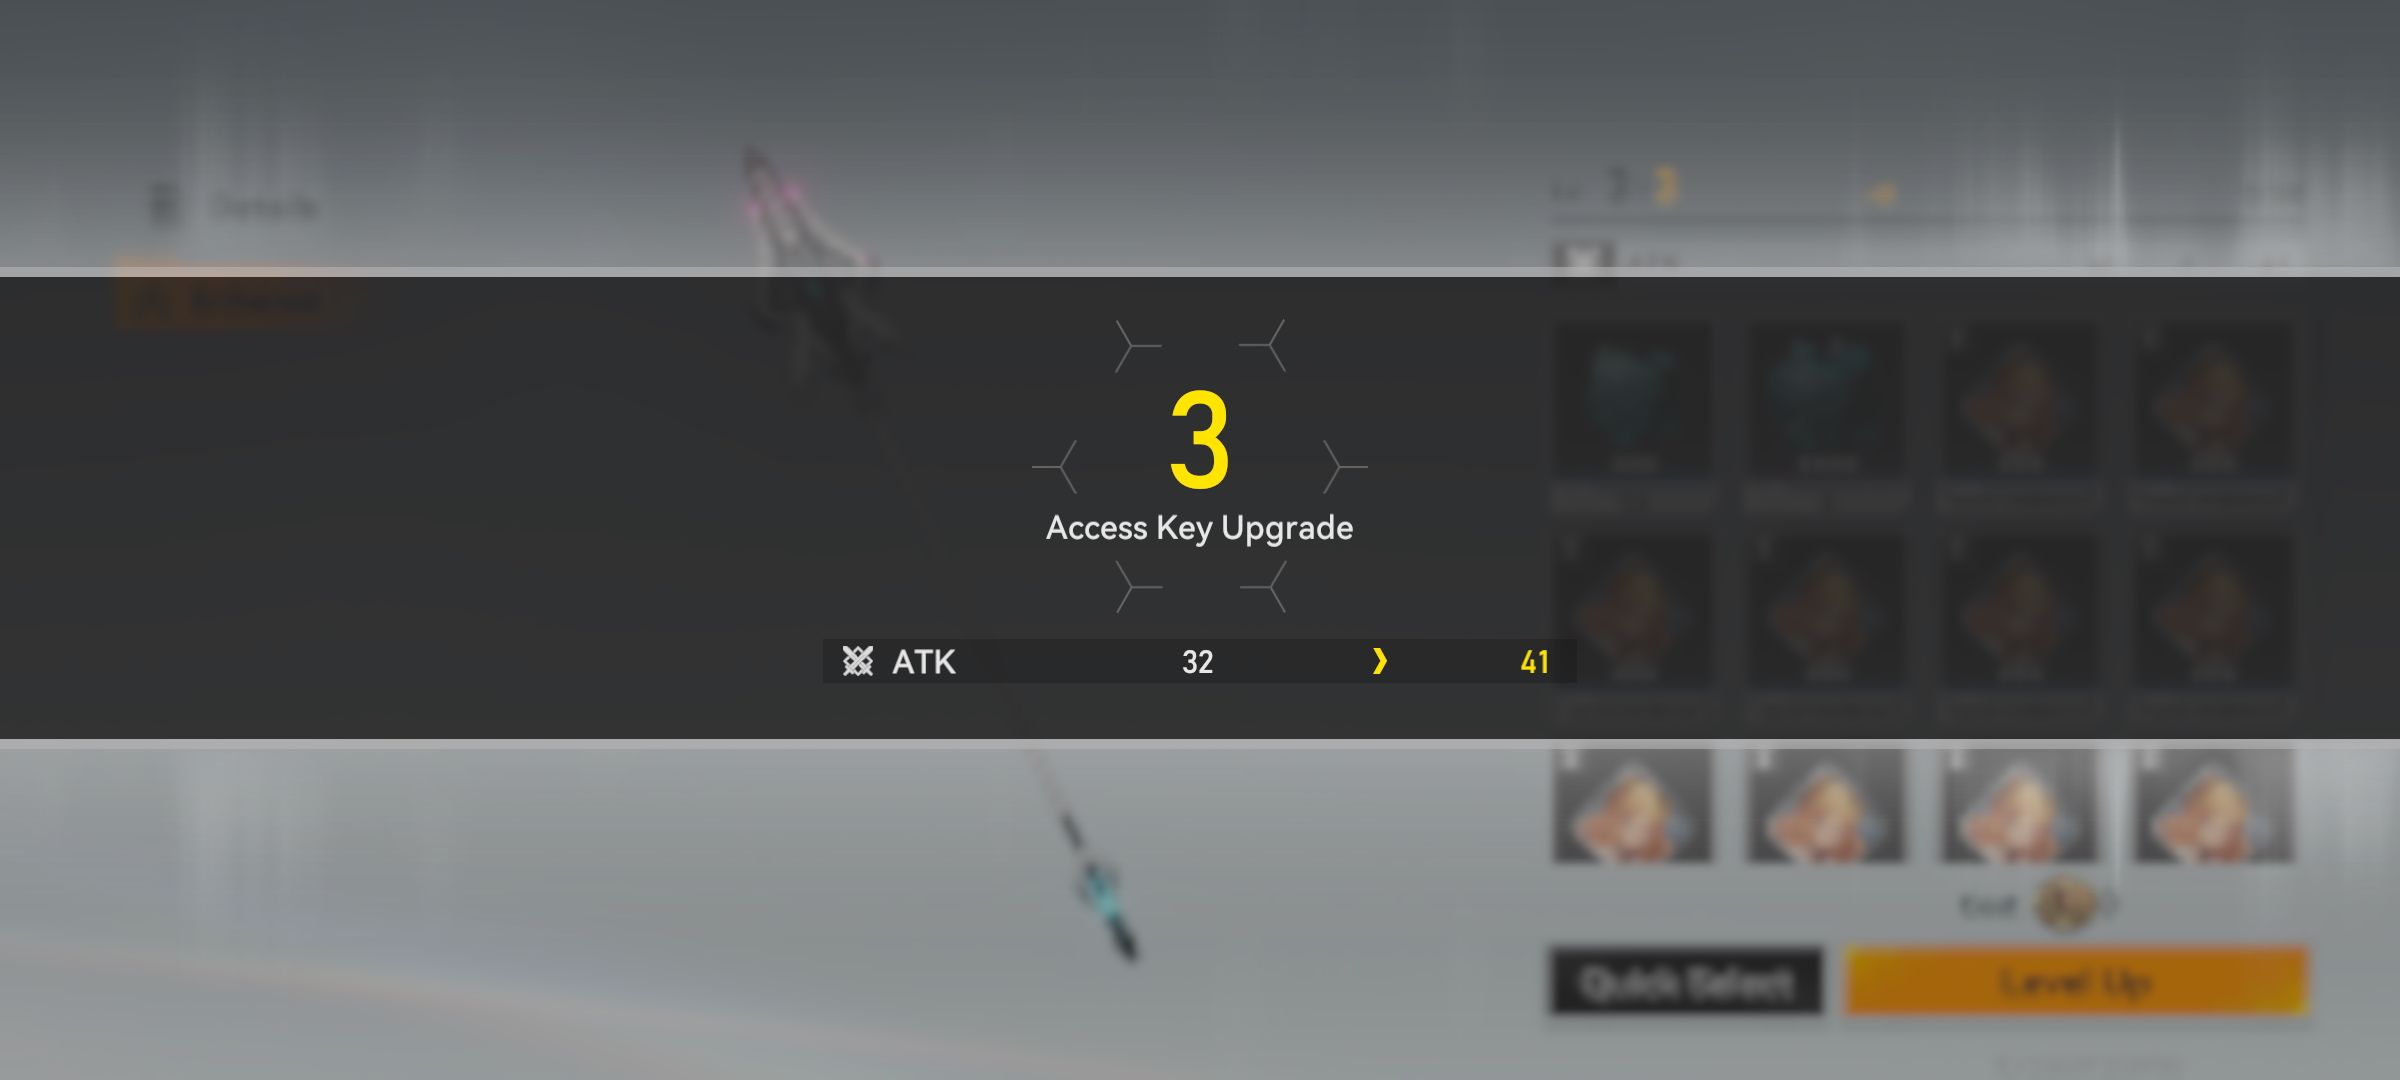 atualização da chave de acesso nível 3 com mudança de ataque de branco para amarelo